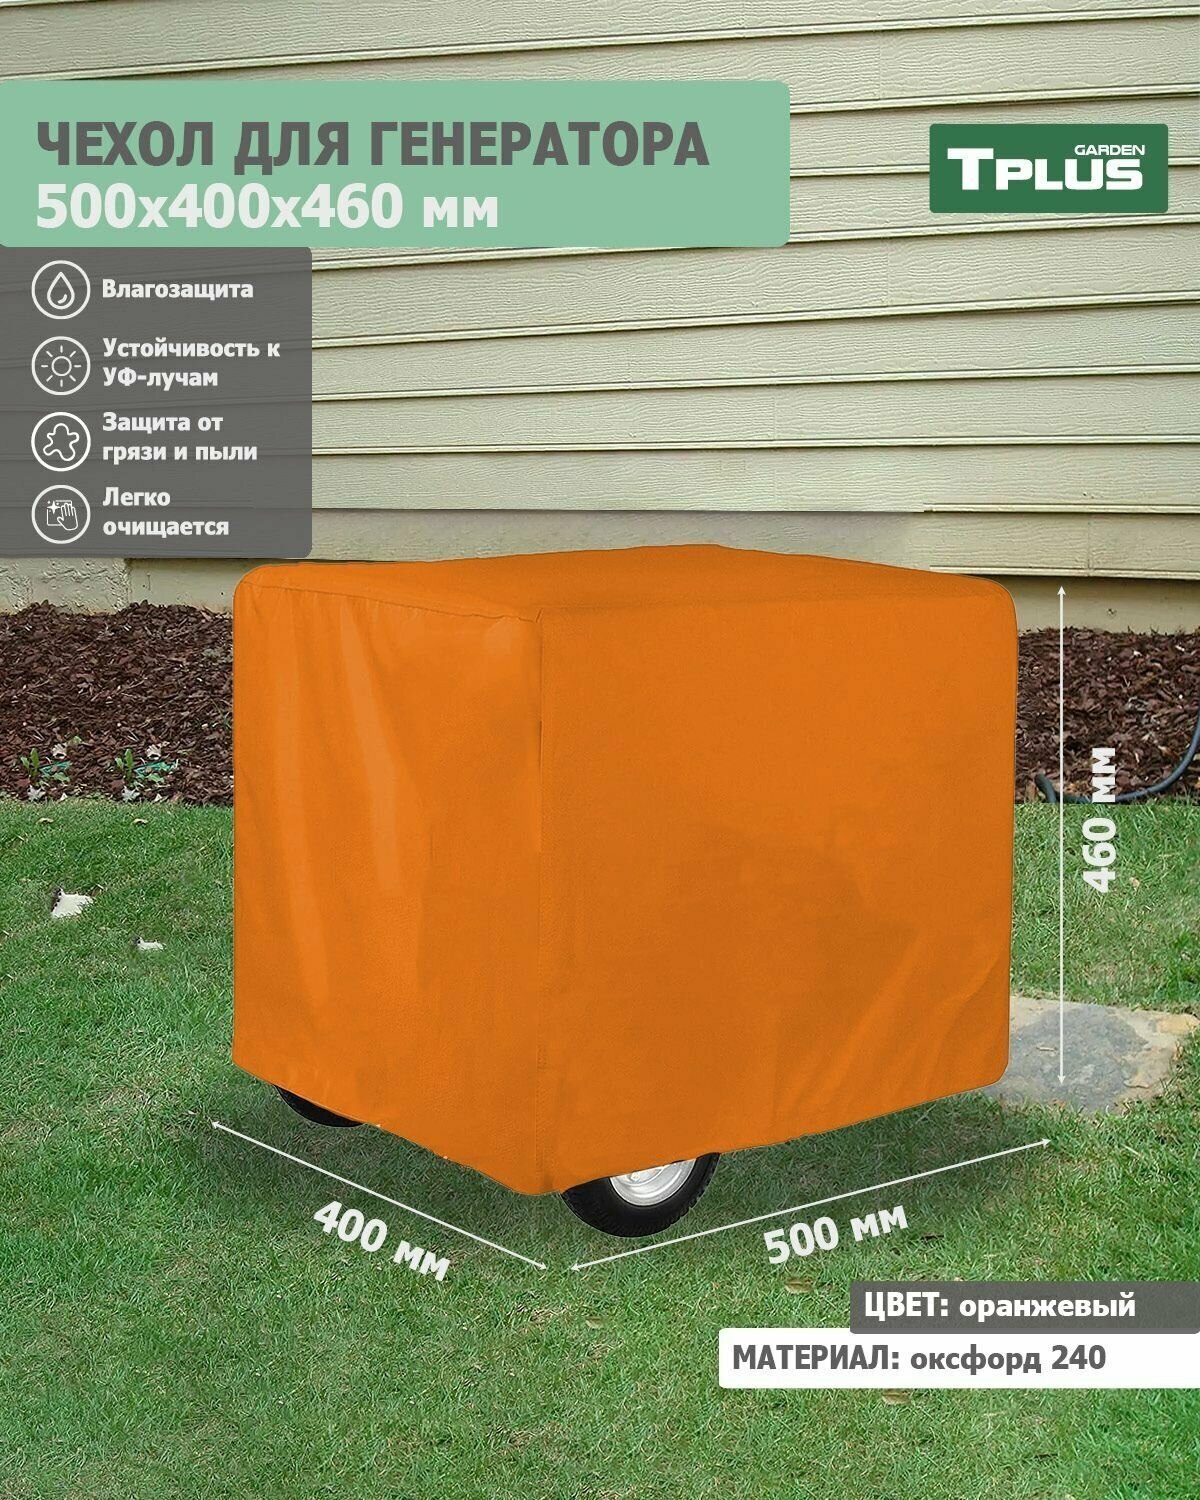 Чехол для генератора 500x400x460 мм (оксфорд 240, оранжевый), Tplus - фотография № 1